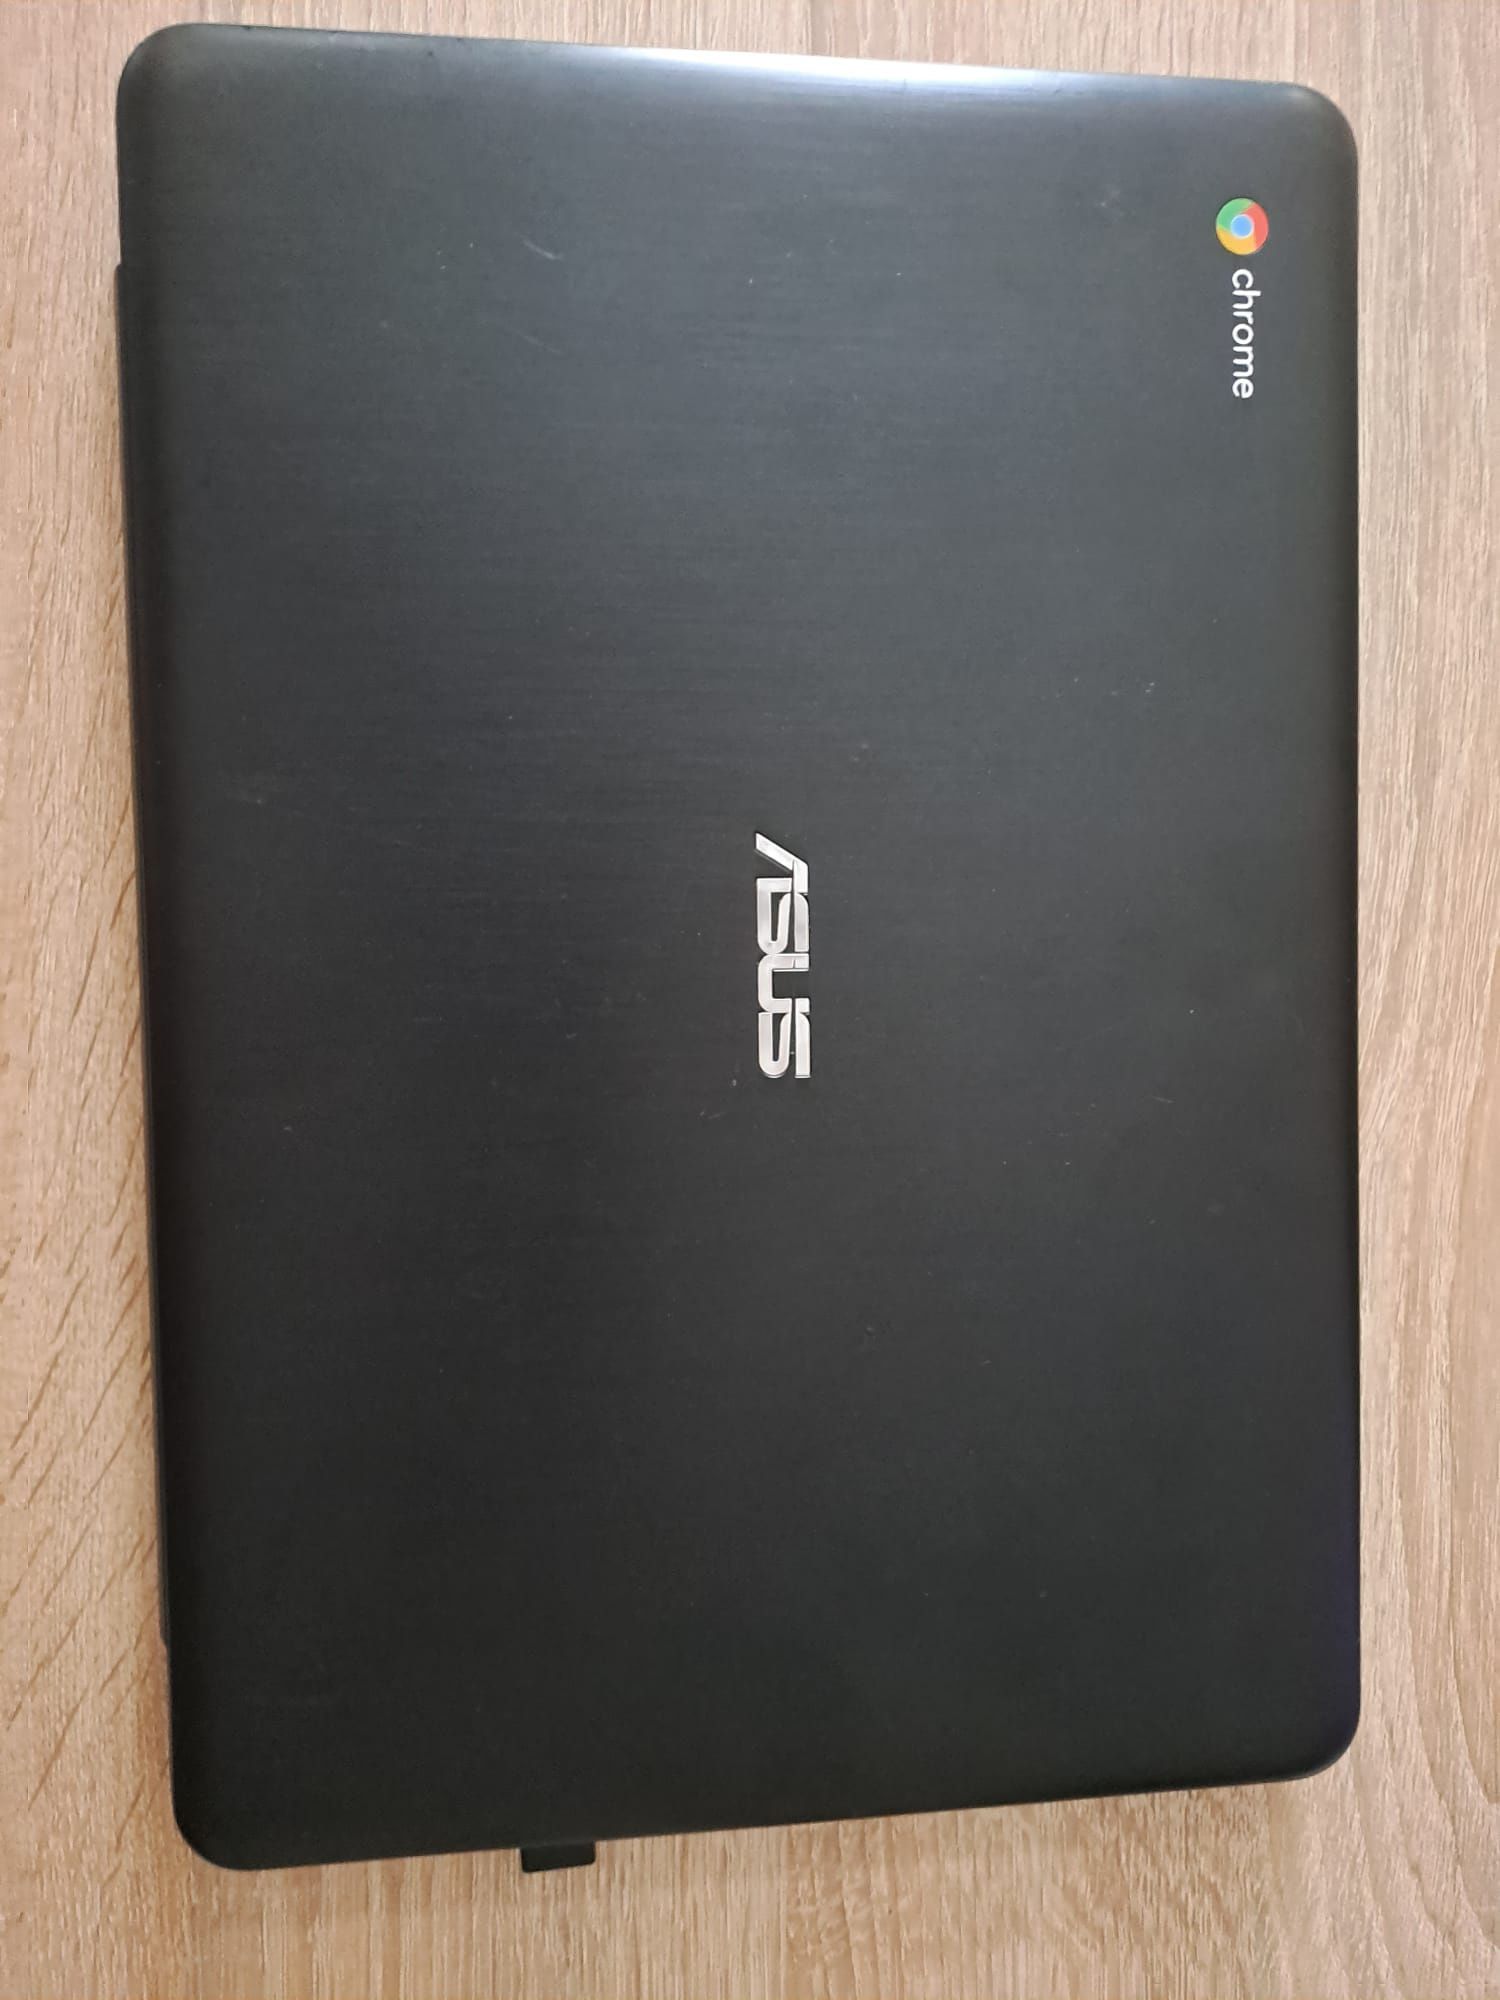 Laptop Asus C300